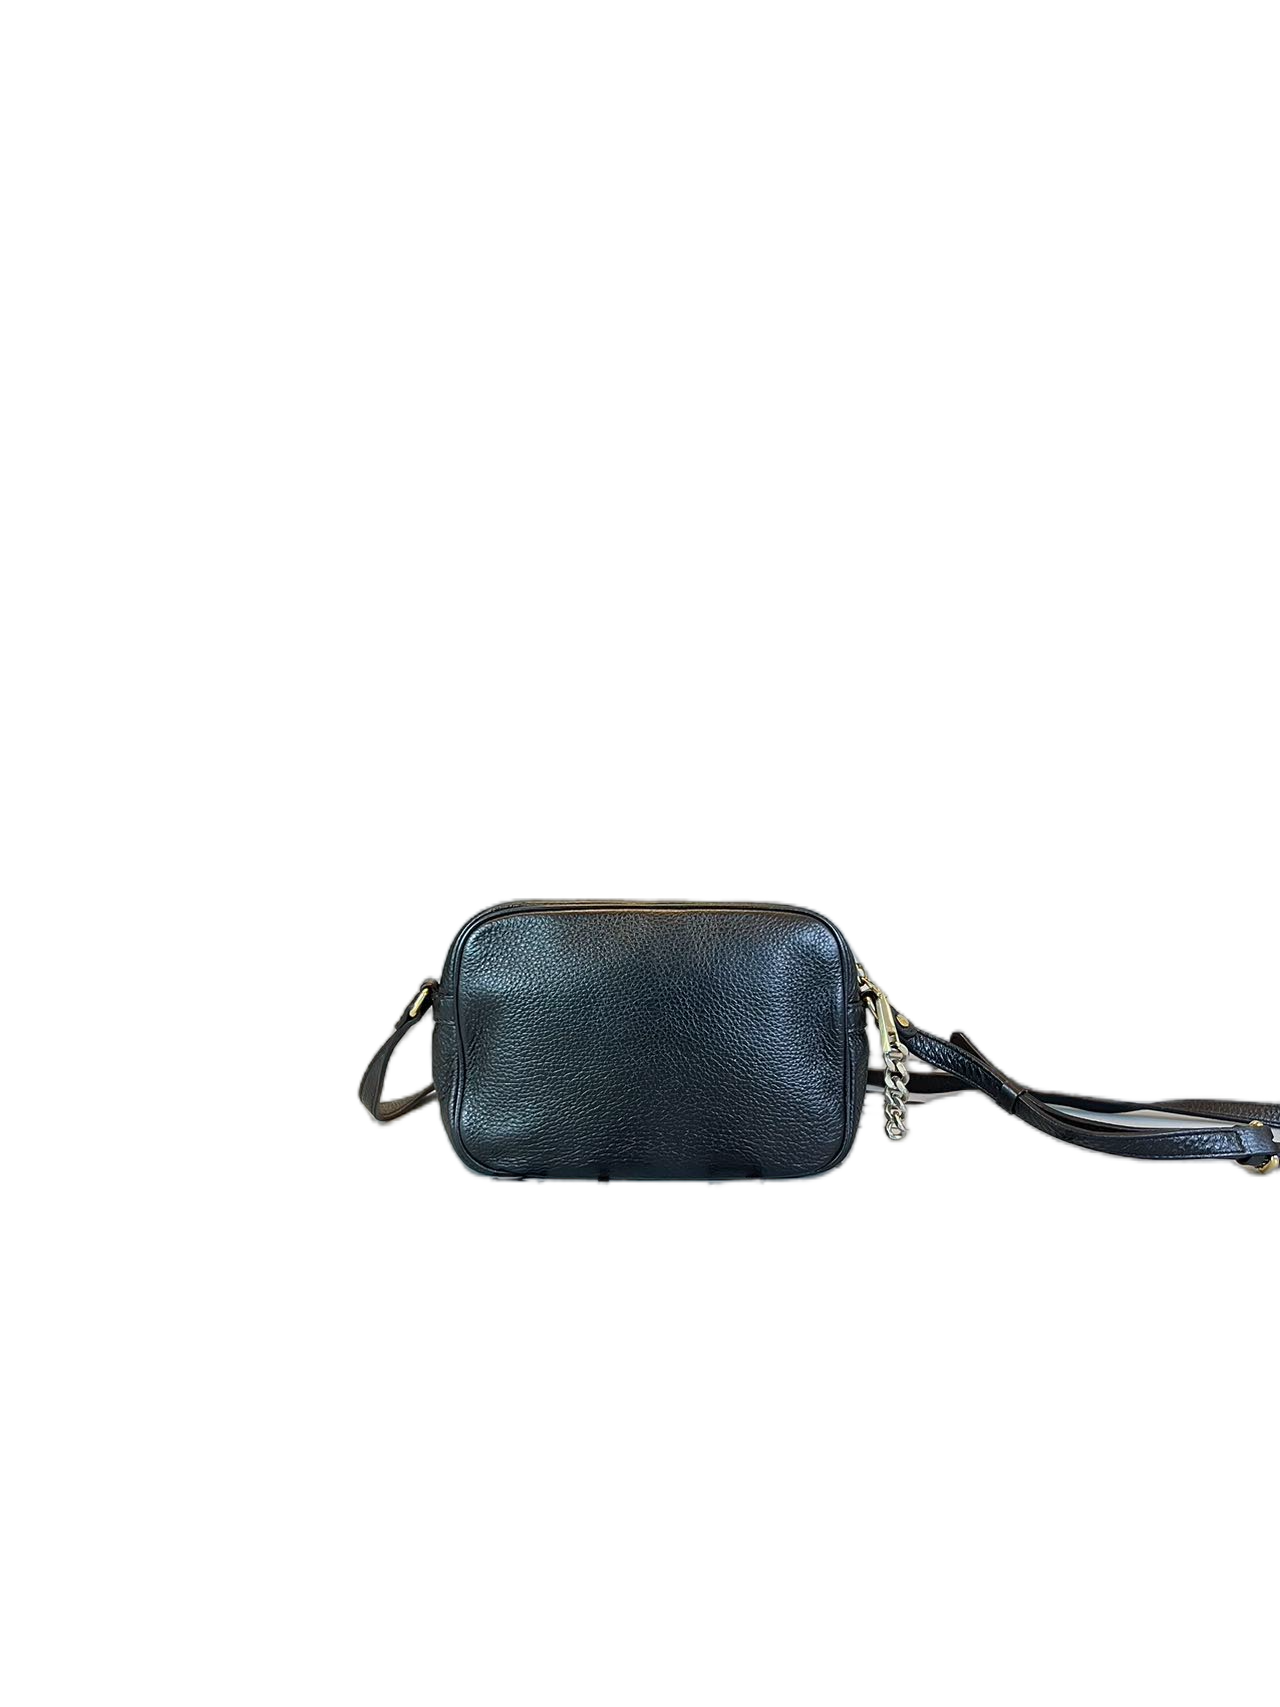 Versace Black Leather Shoulder bag Crossbody